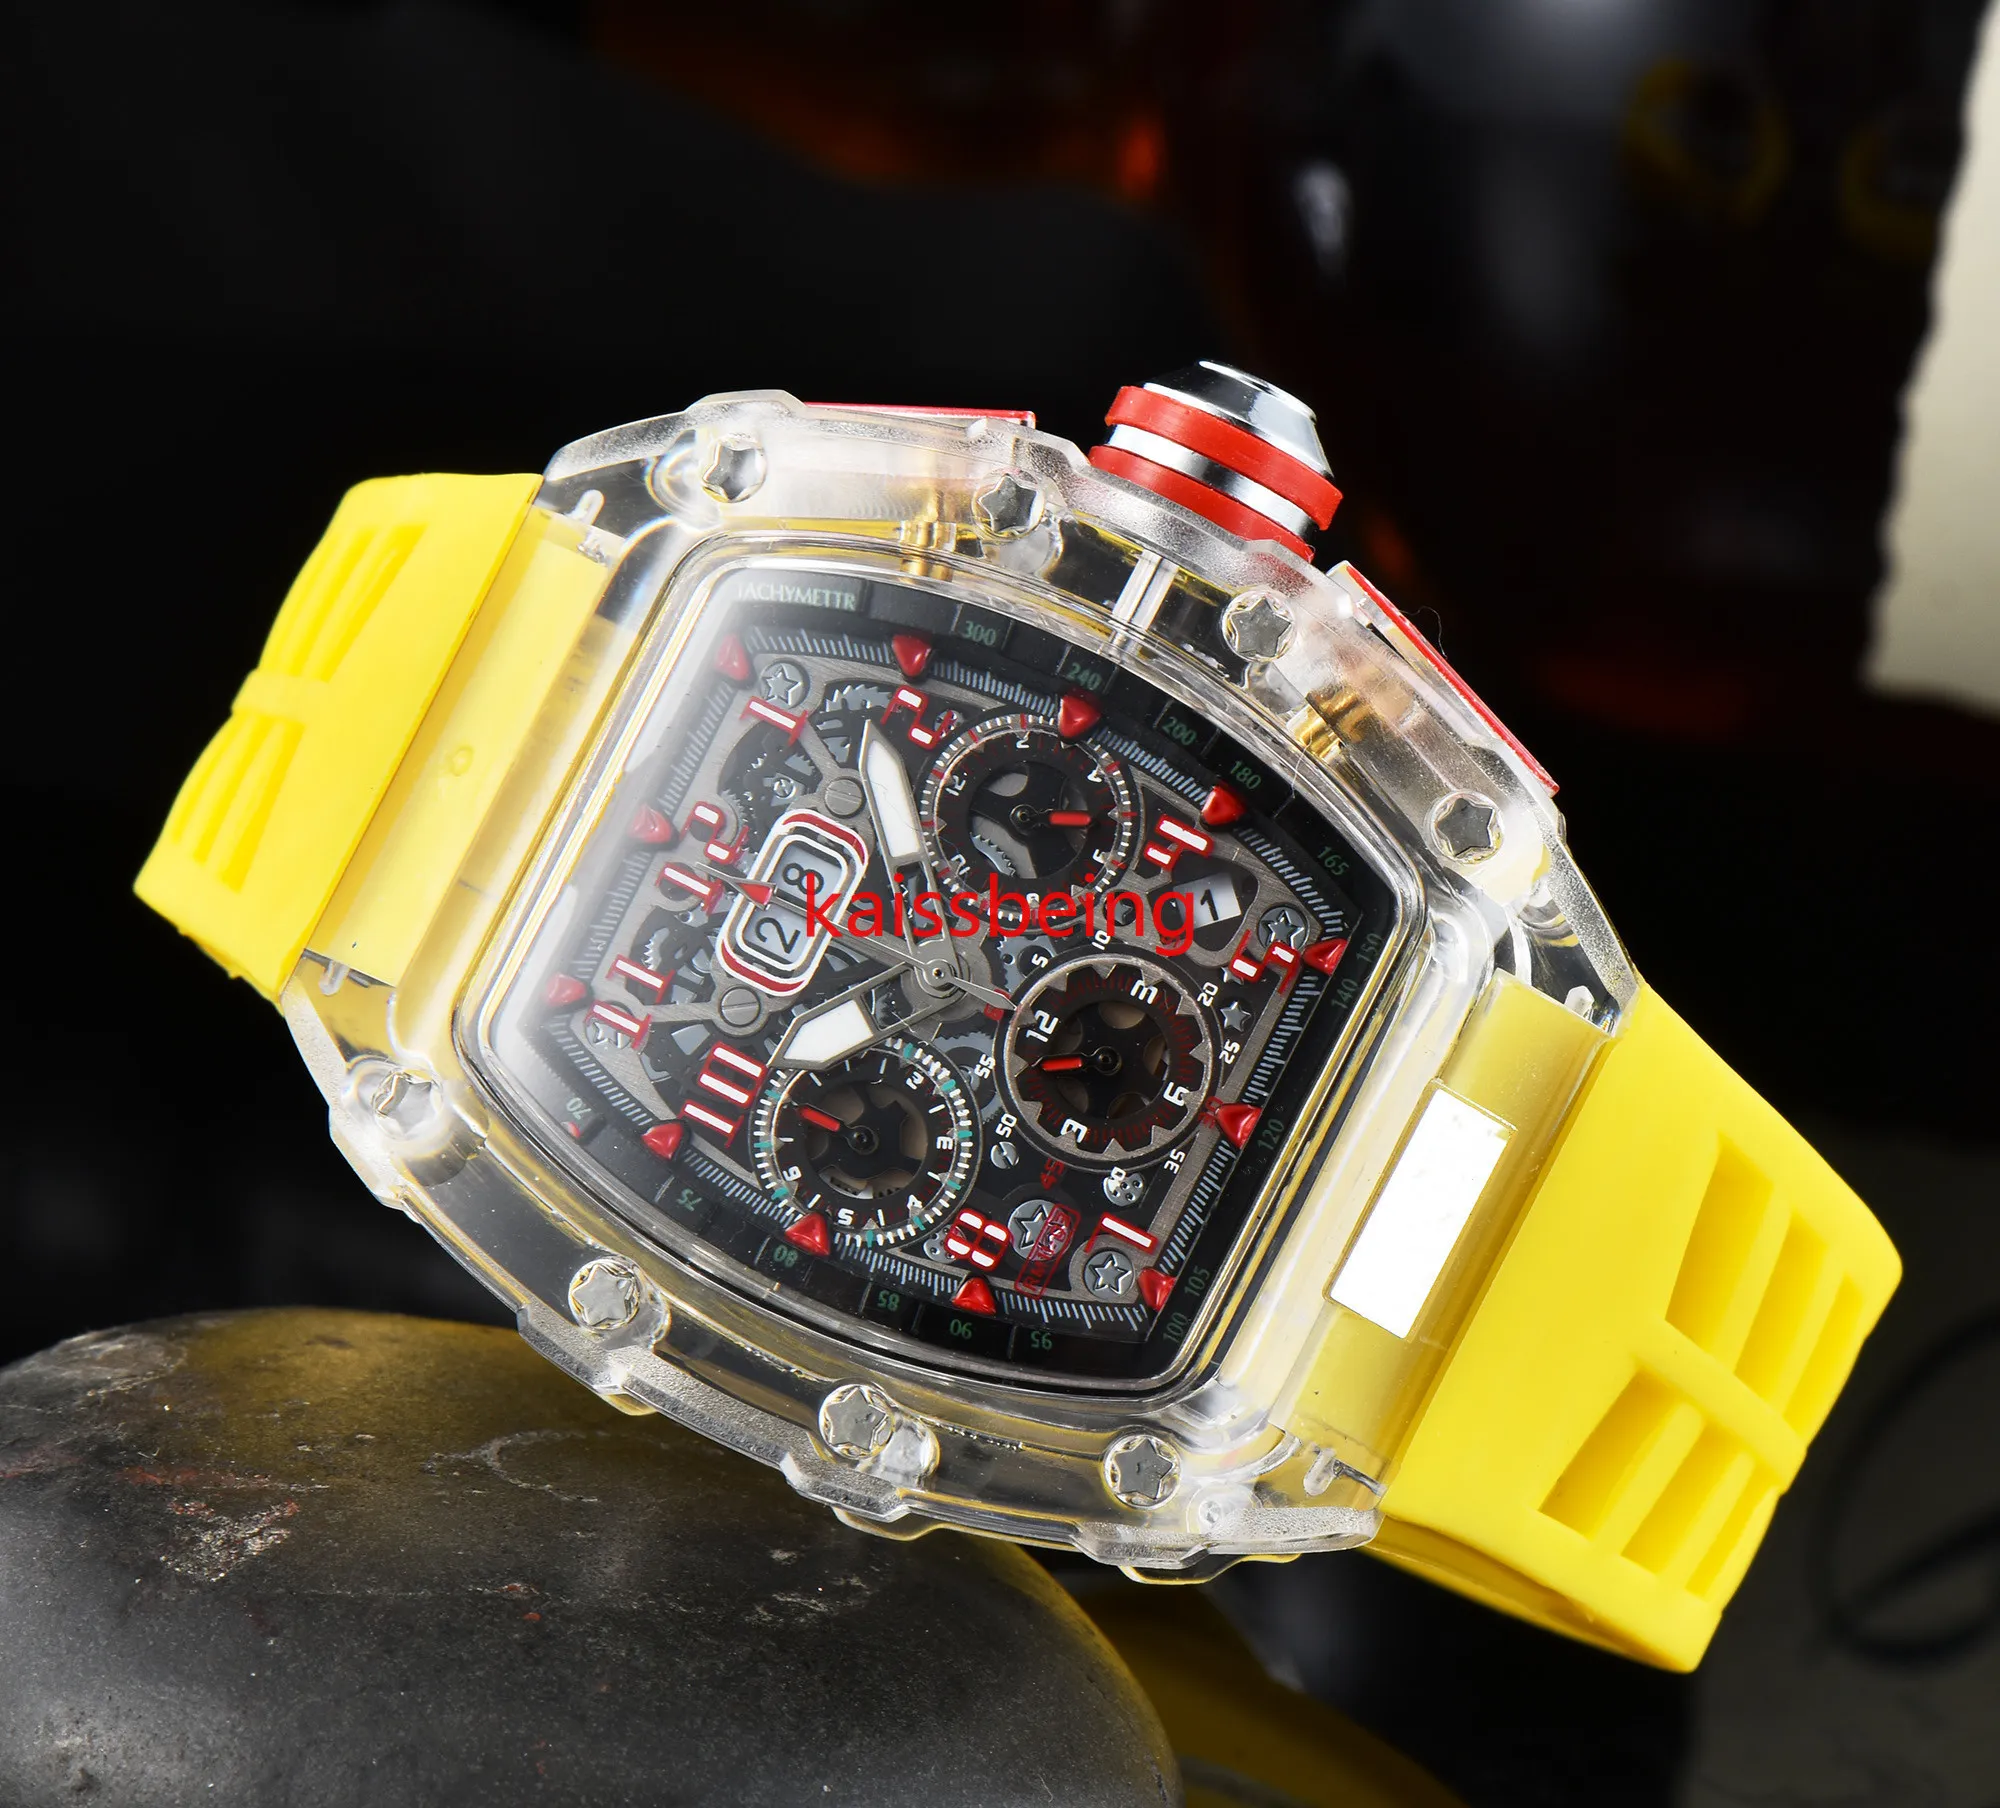 Hot Fashion Style Luksusowy zegarek Sport Kwarcowy Biznesowy Przezroczysty Silikonowy Zegarek Mężczyzna Kalendarz Zegarek Na Rękę Data Modele Brand New